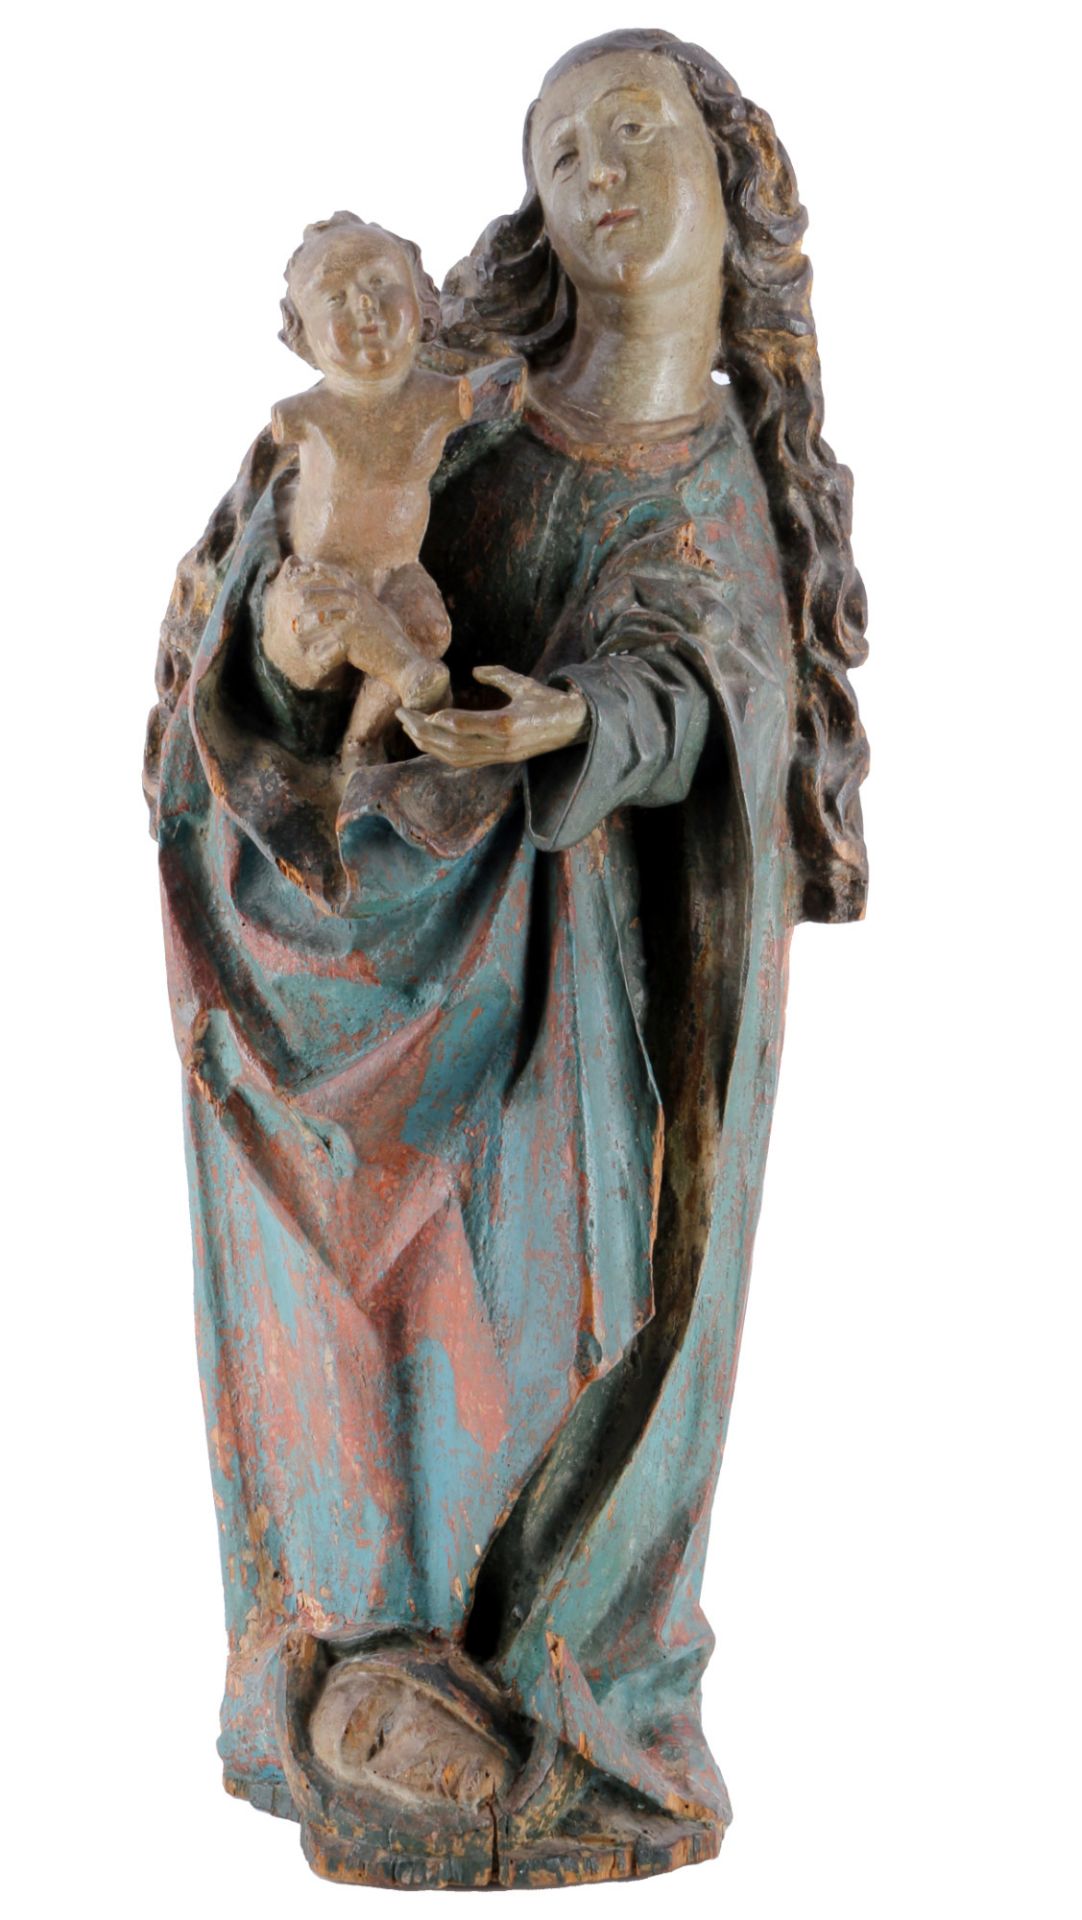 Heiligenfigur 16./17. Jahrhundert große Heilige Madonna mit Christus Kind,